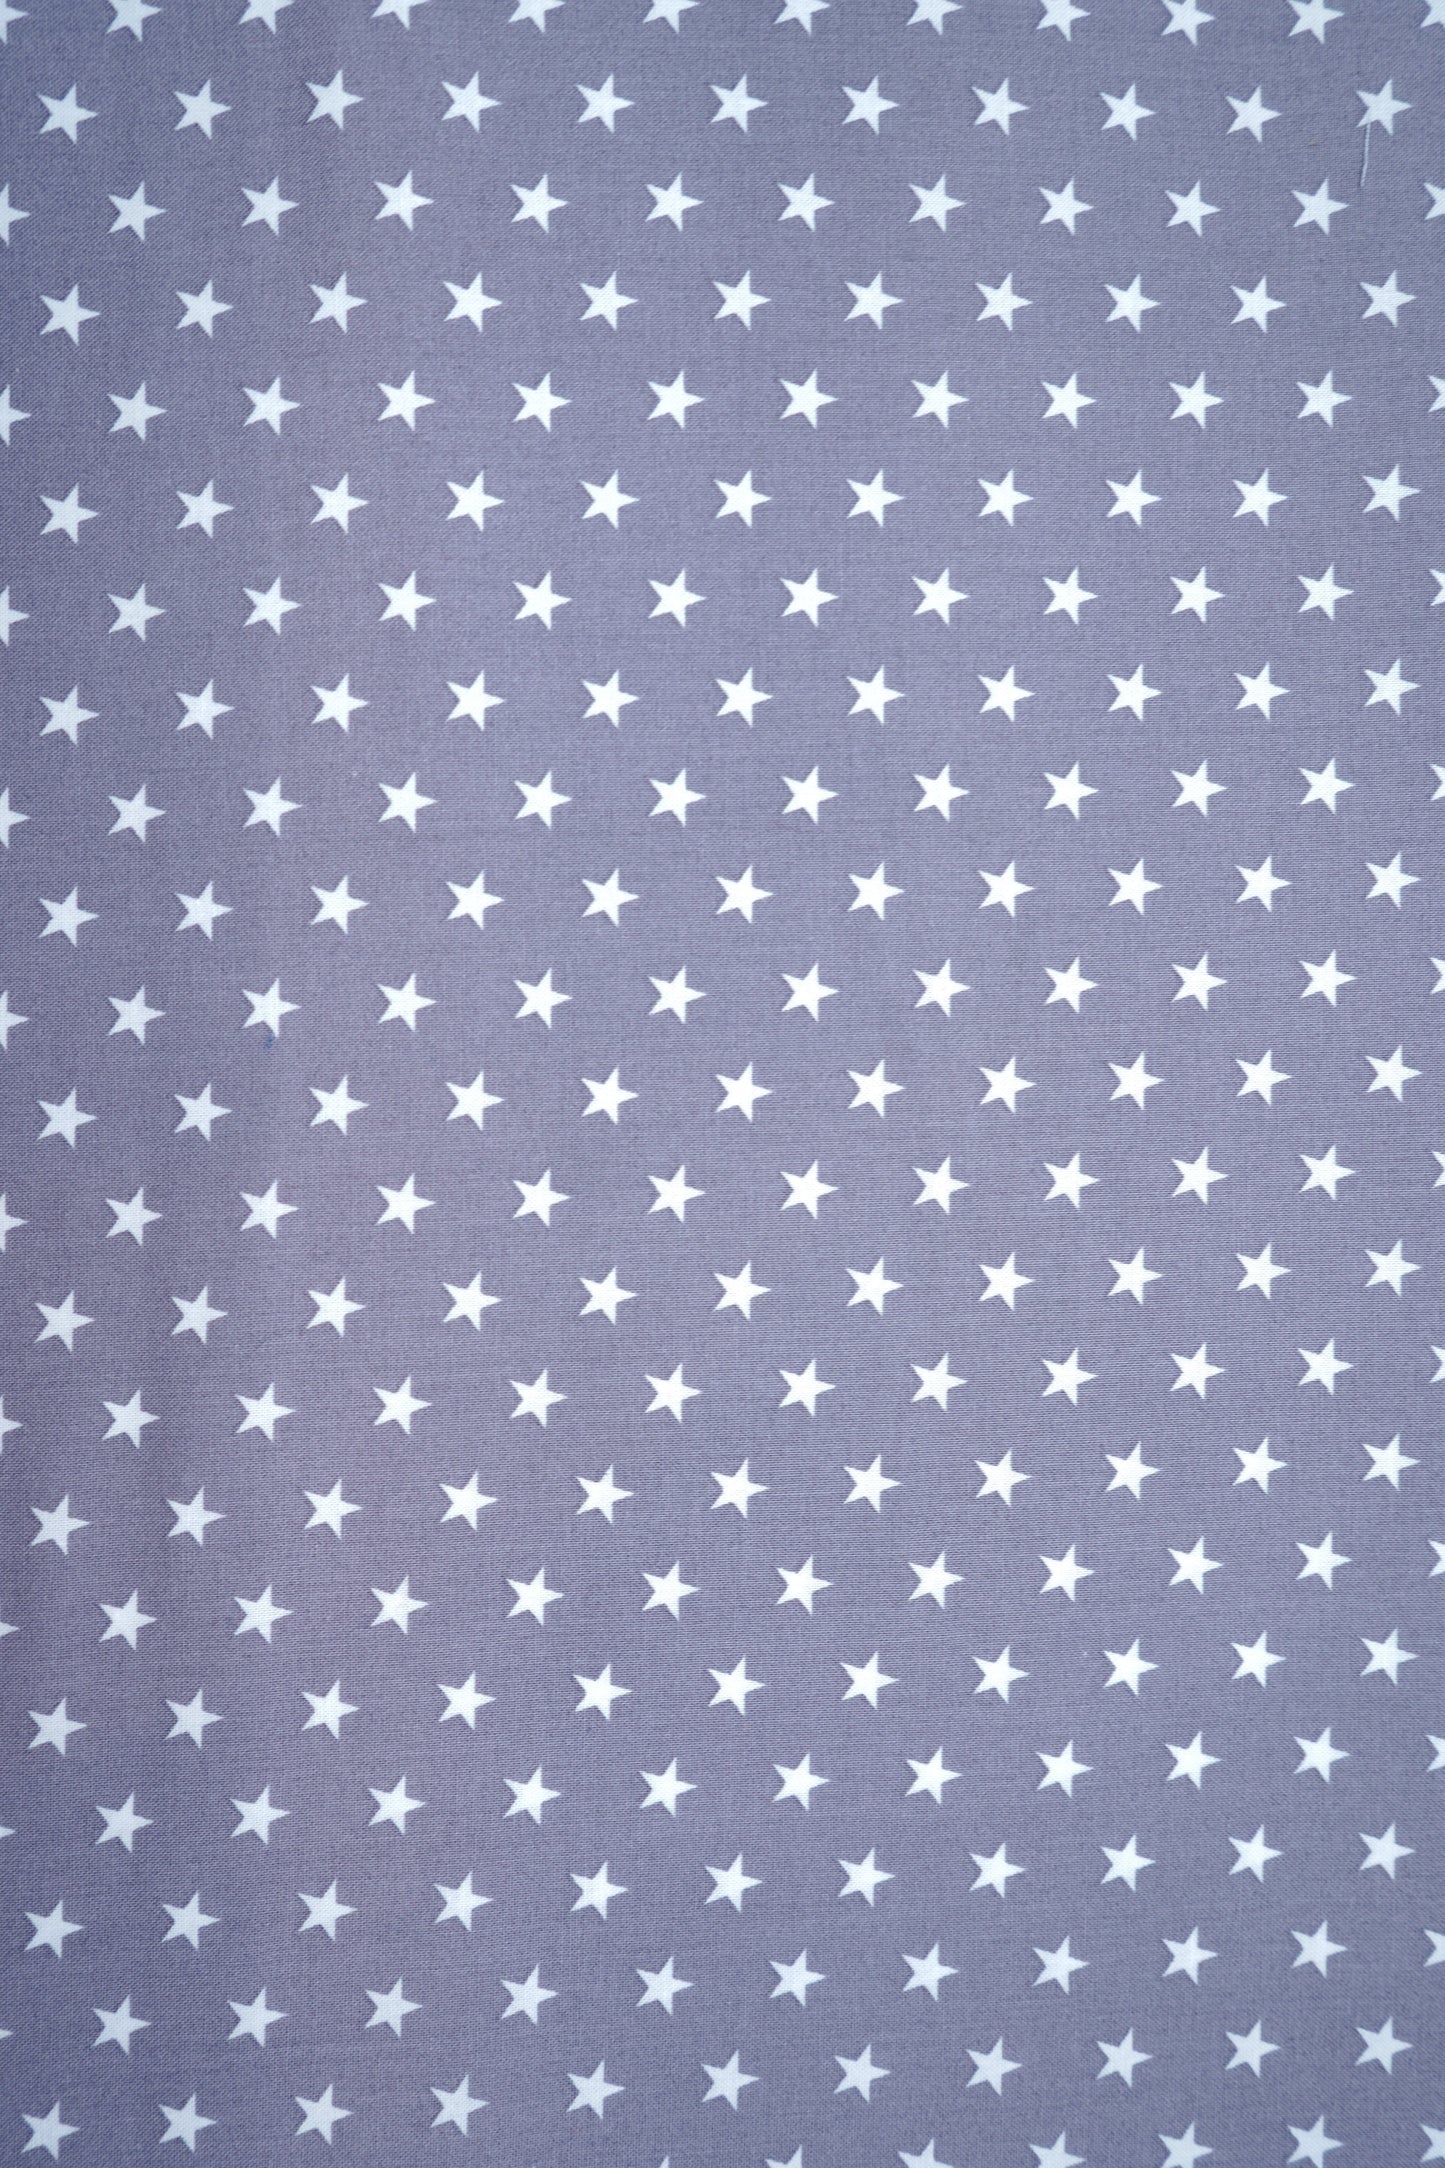 Baumwolle Sterne in 3 versch. Farben